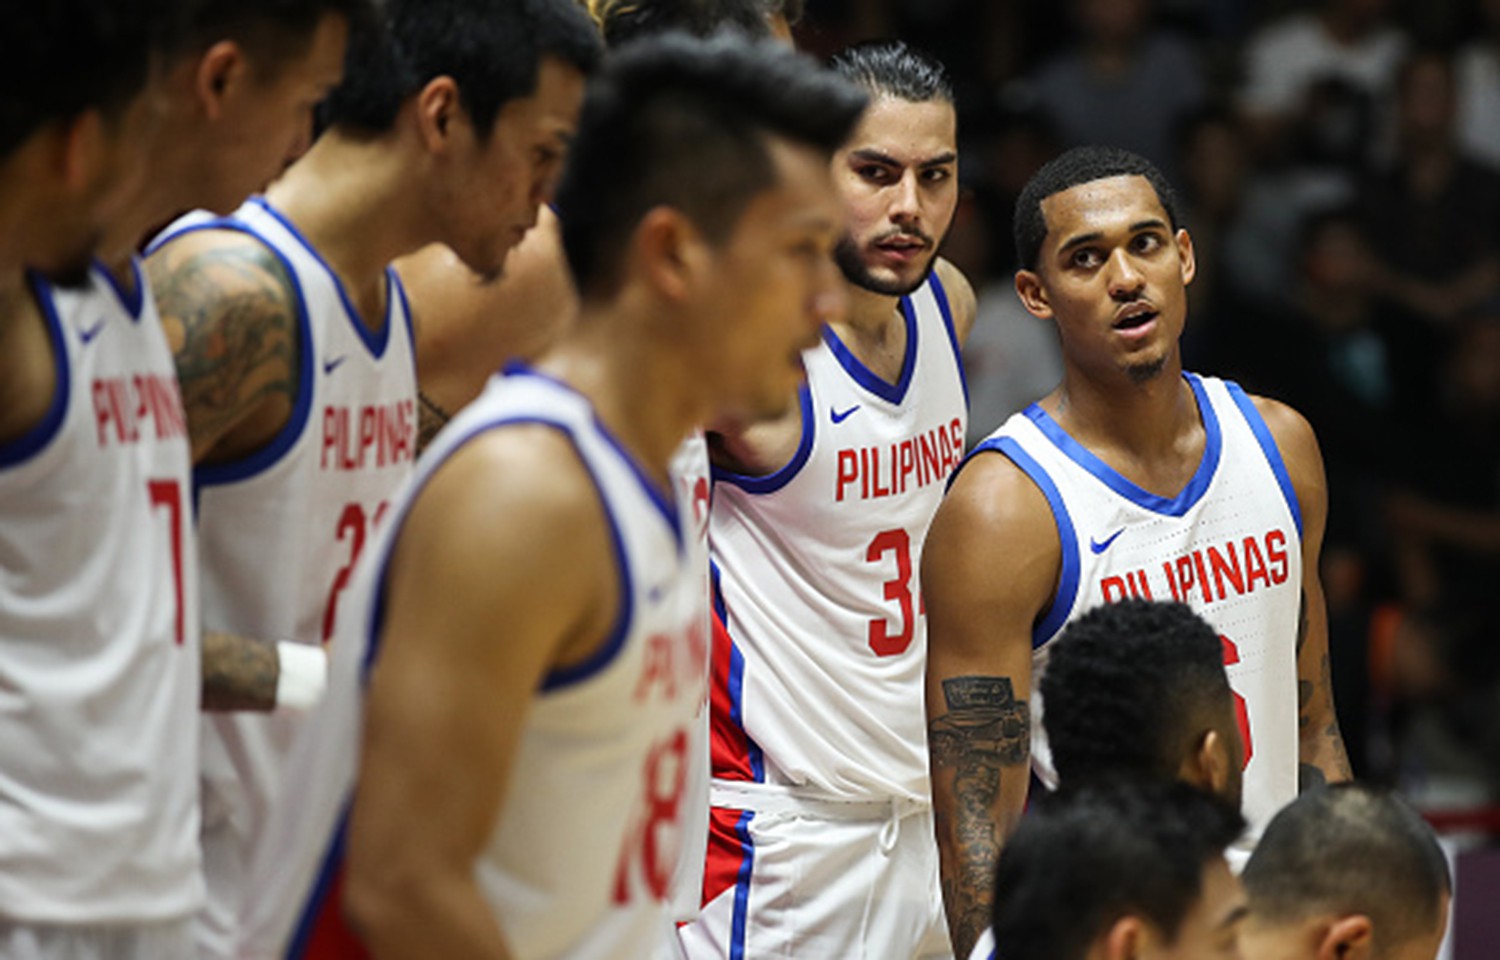 Tuyển bóng rổ Philippines rơi vào nhánh đấu toàn ứng viên vô địch ASIAD 18 - Ảnh 1.